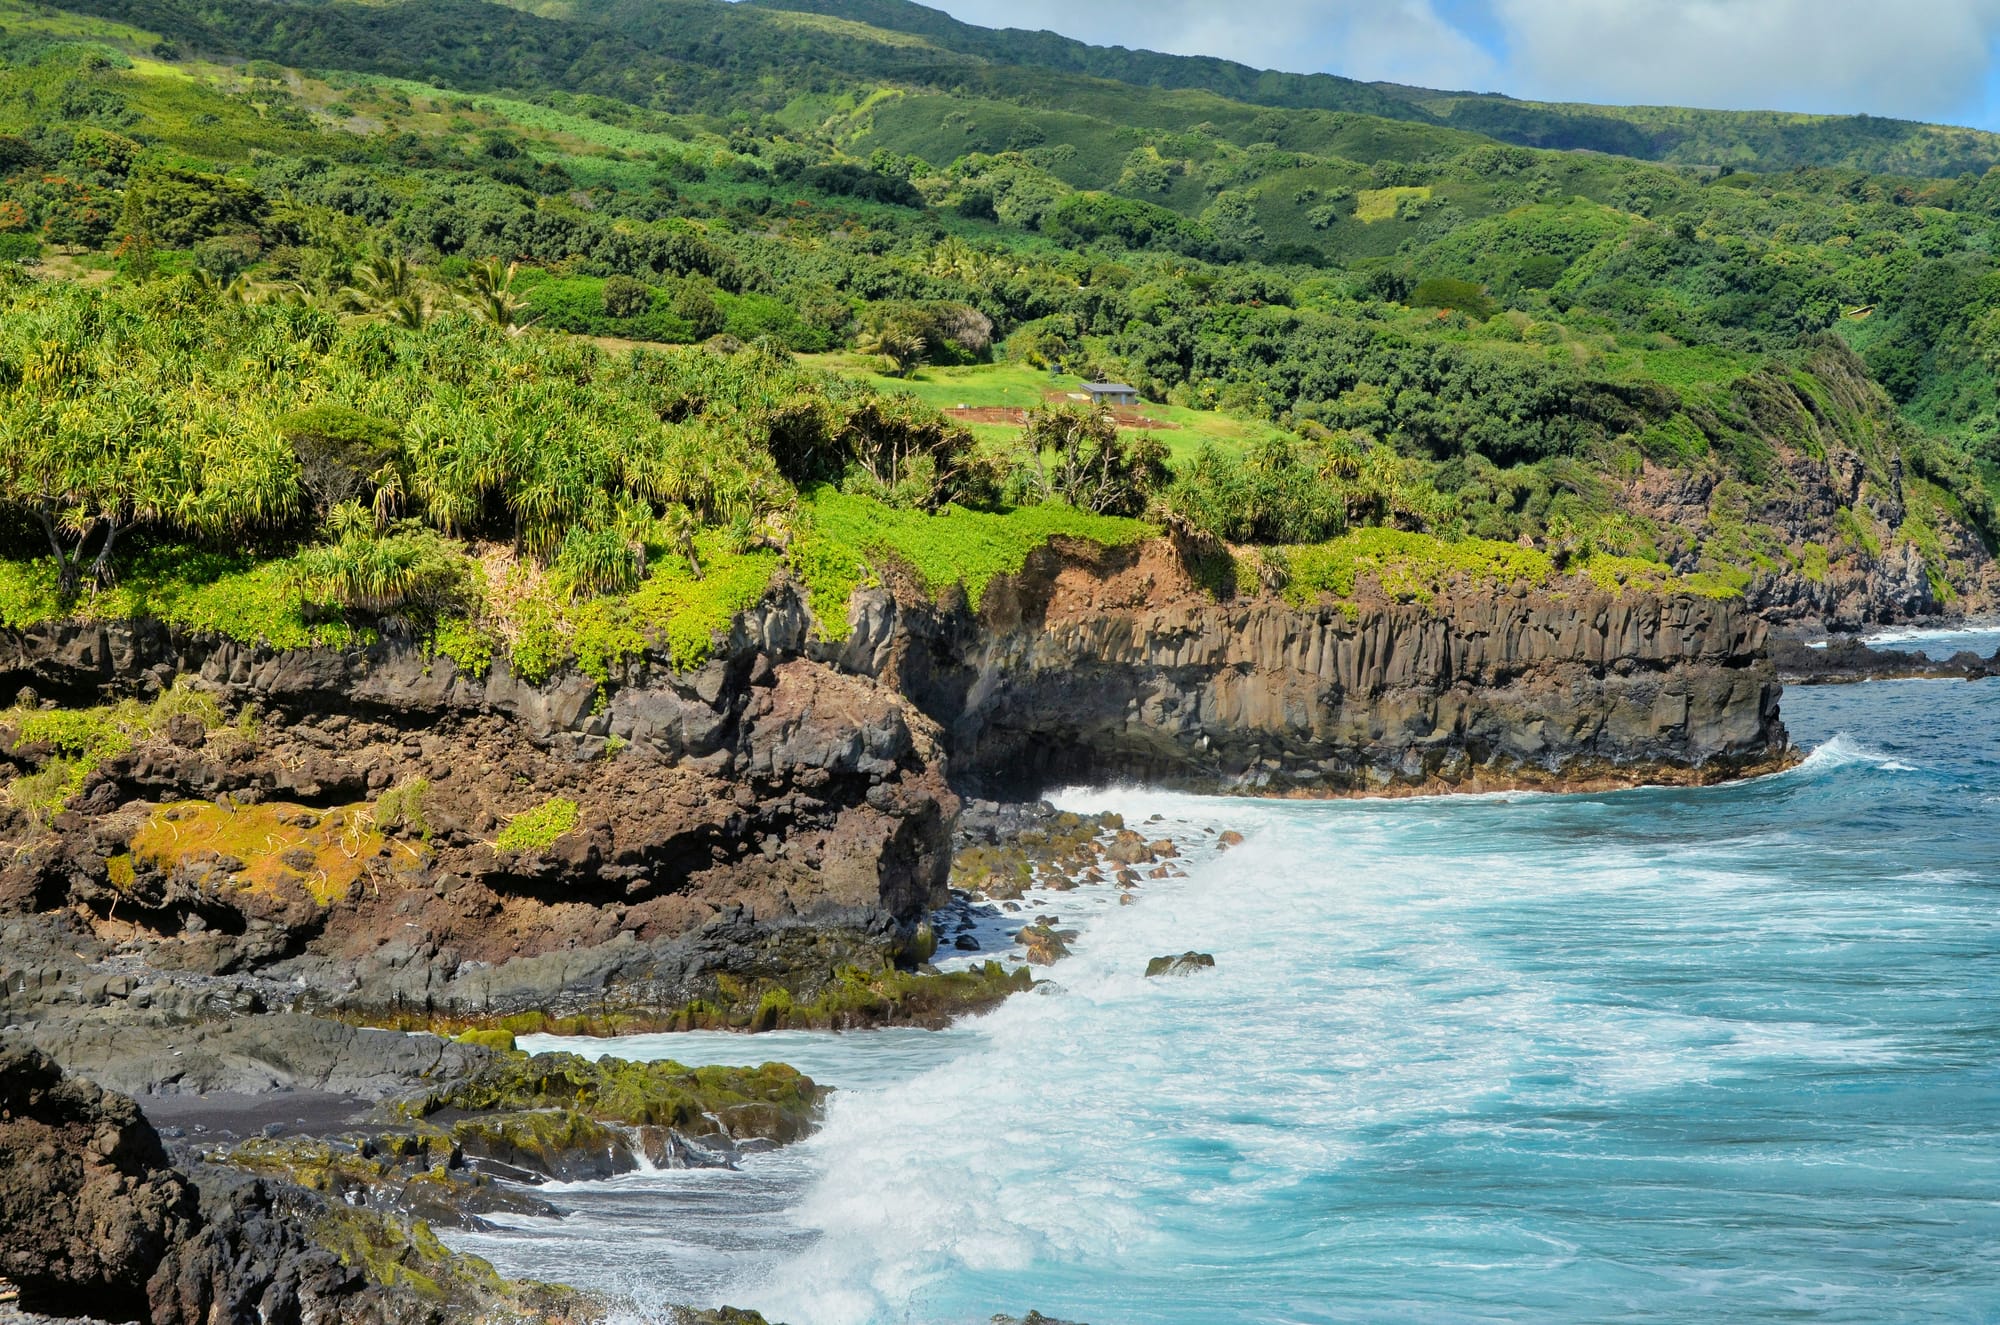 Coastal views along the Road to Hana in Maui